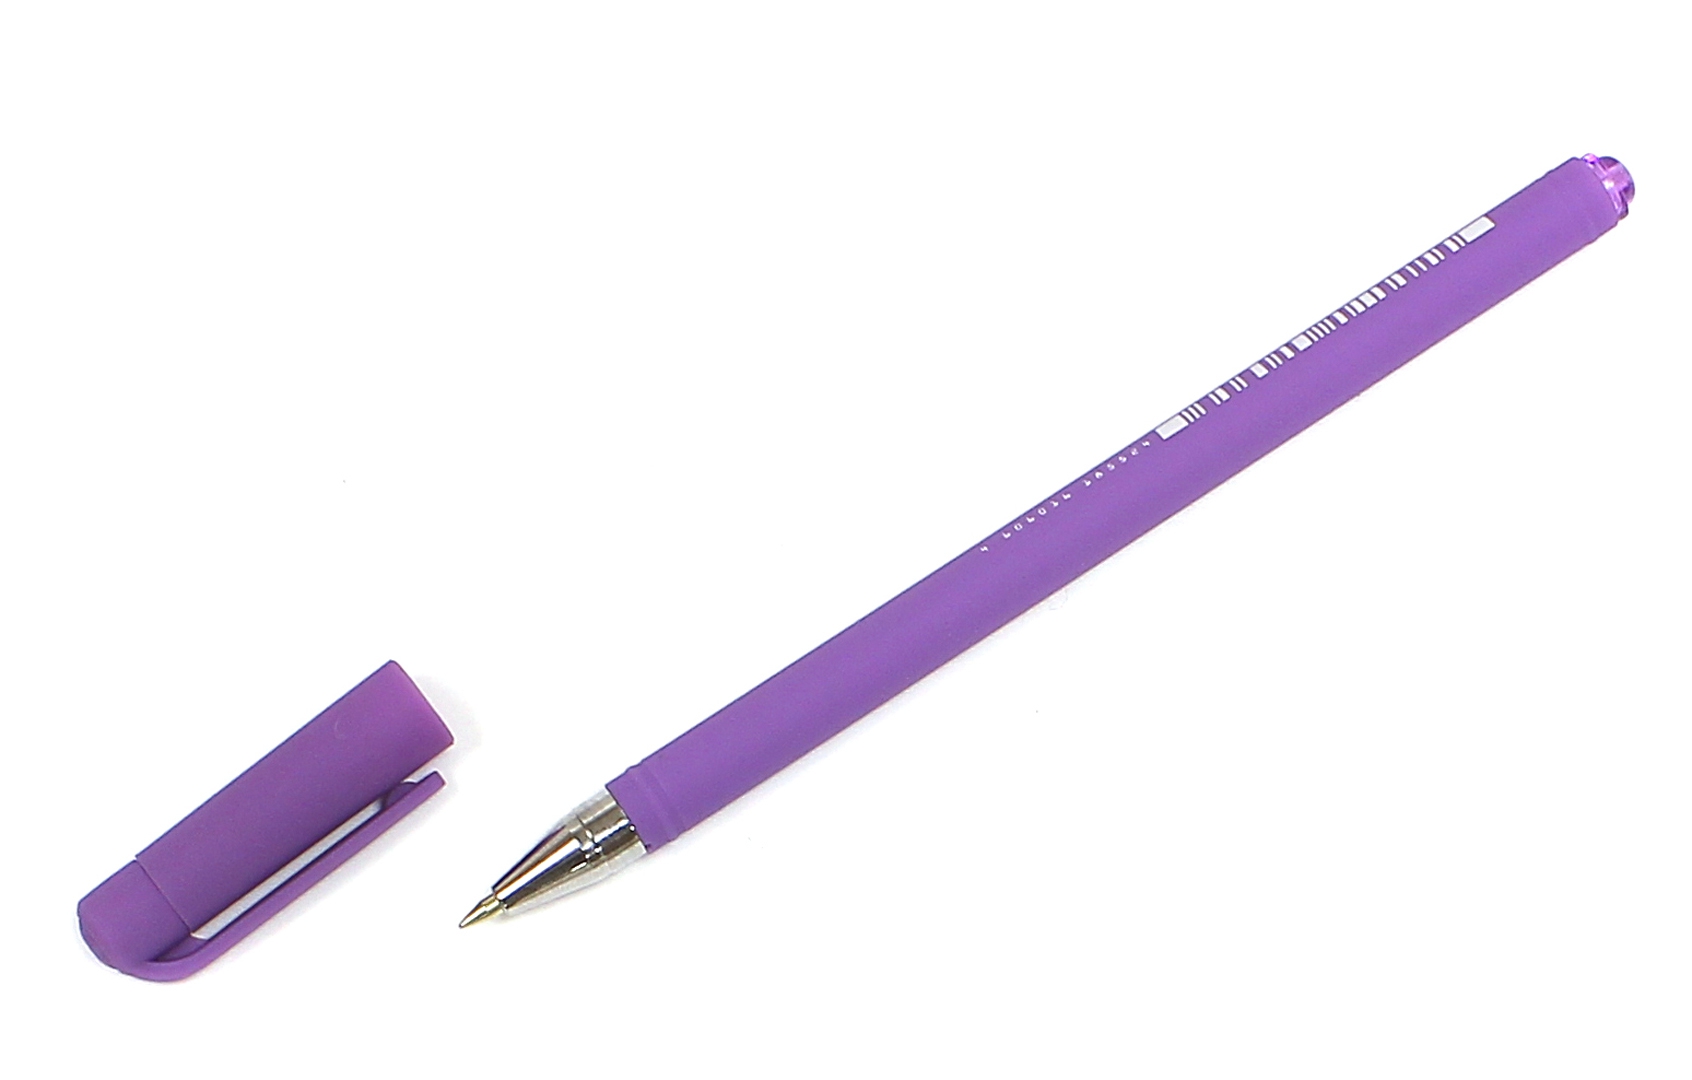 Иллюстрация 1 из 16 для Ручка шариковая SlimWrite. SPECIAL, 0.5 мм, синяя, в ассортименте | Лабиринт - канцтовы. Источник: Лабиринт